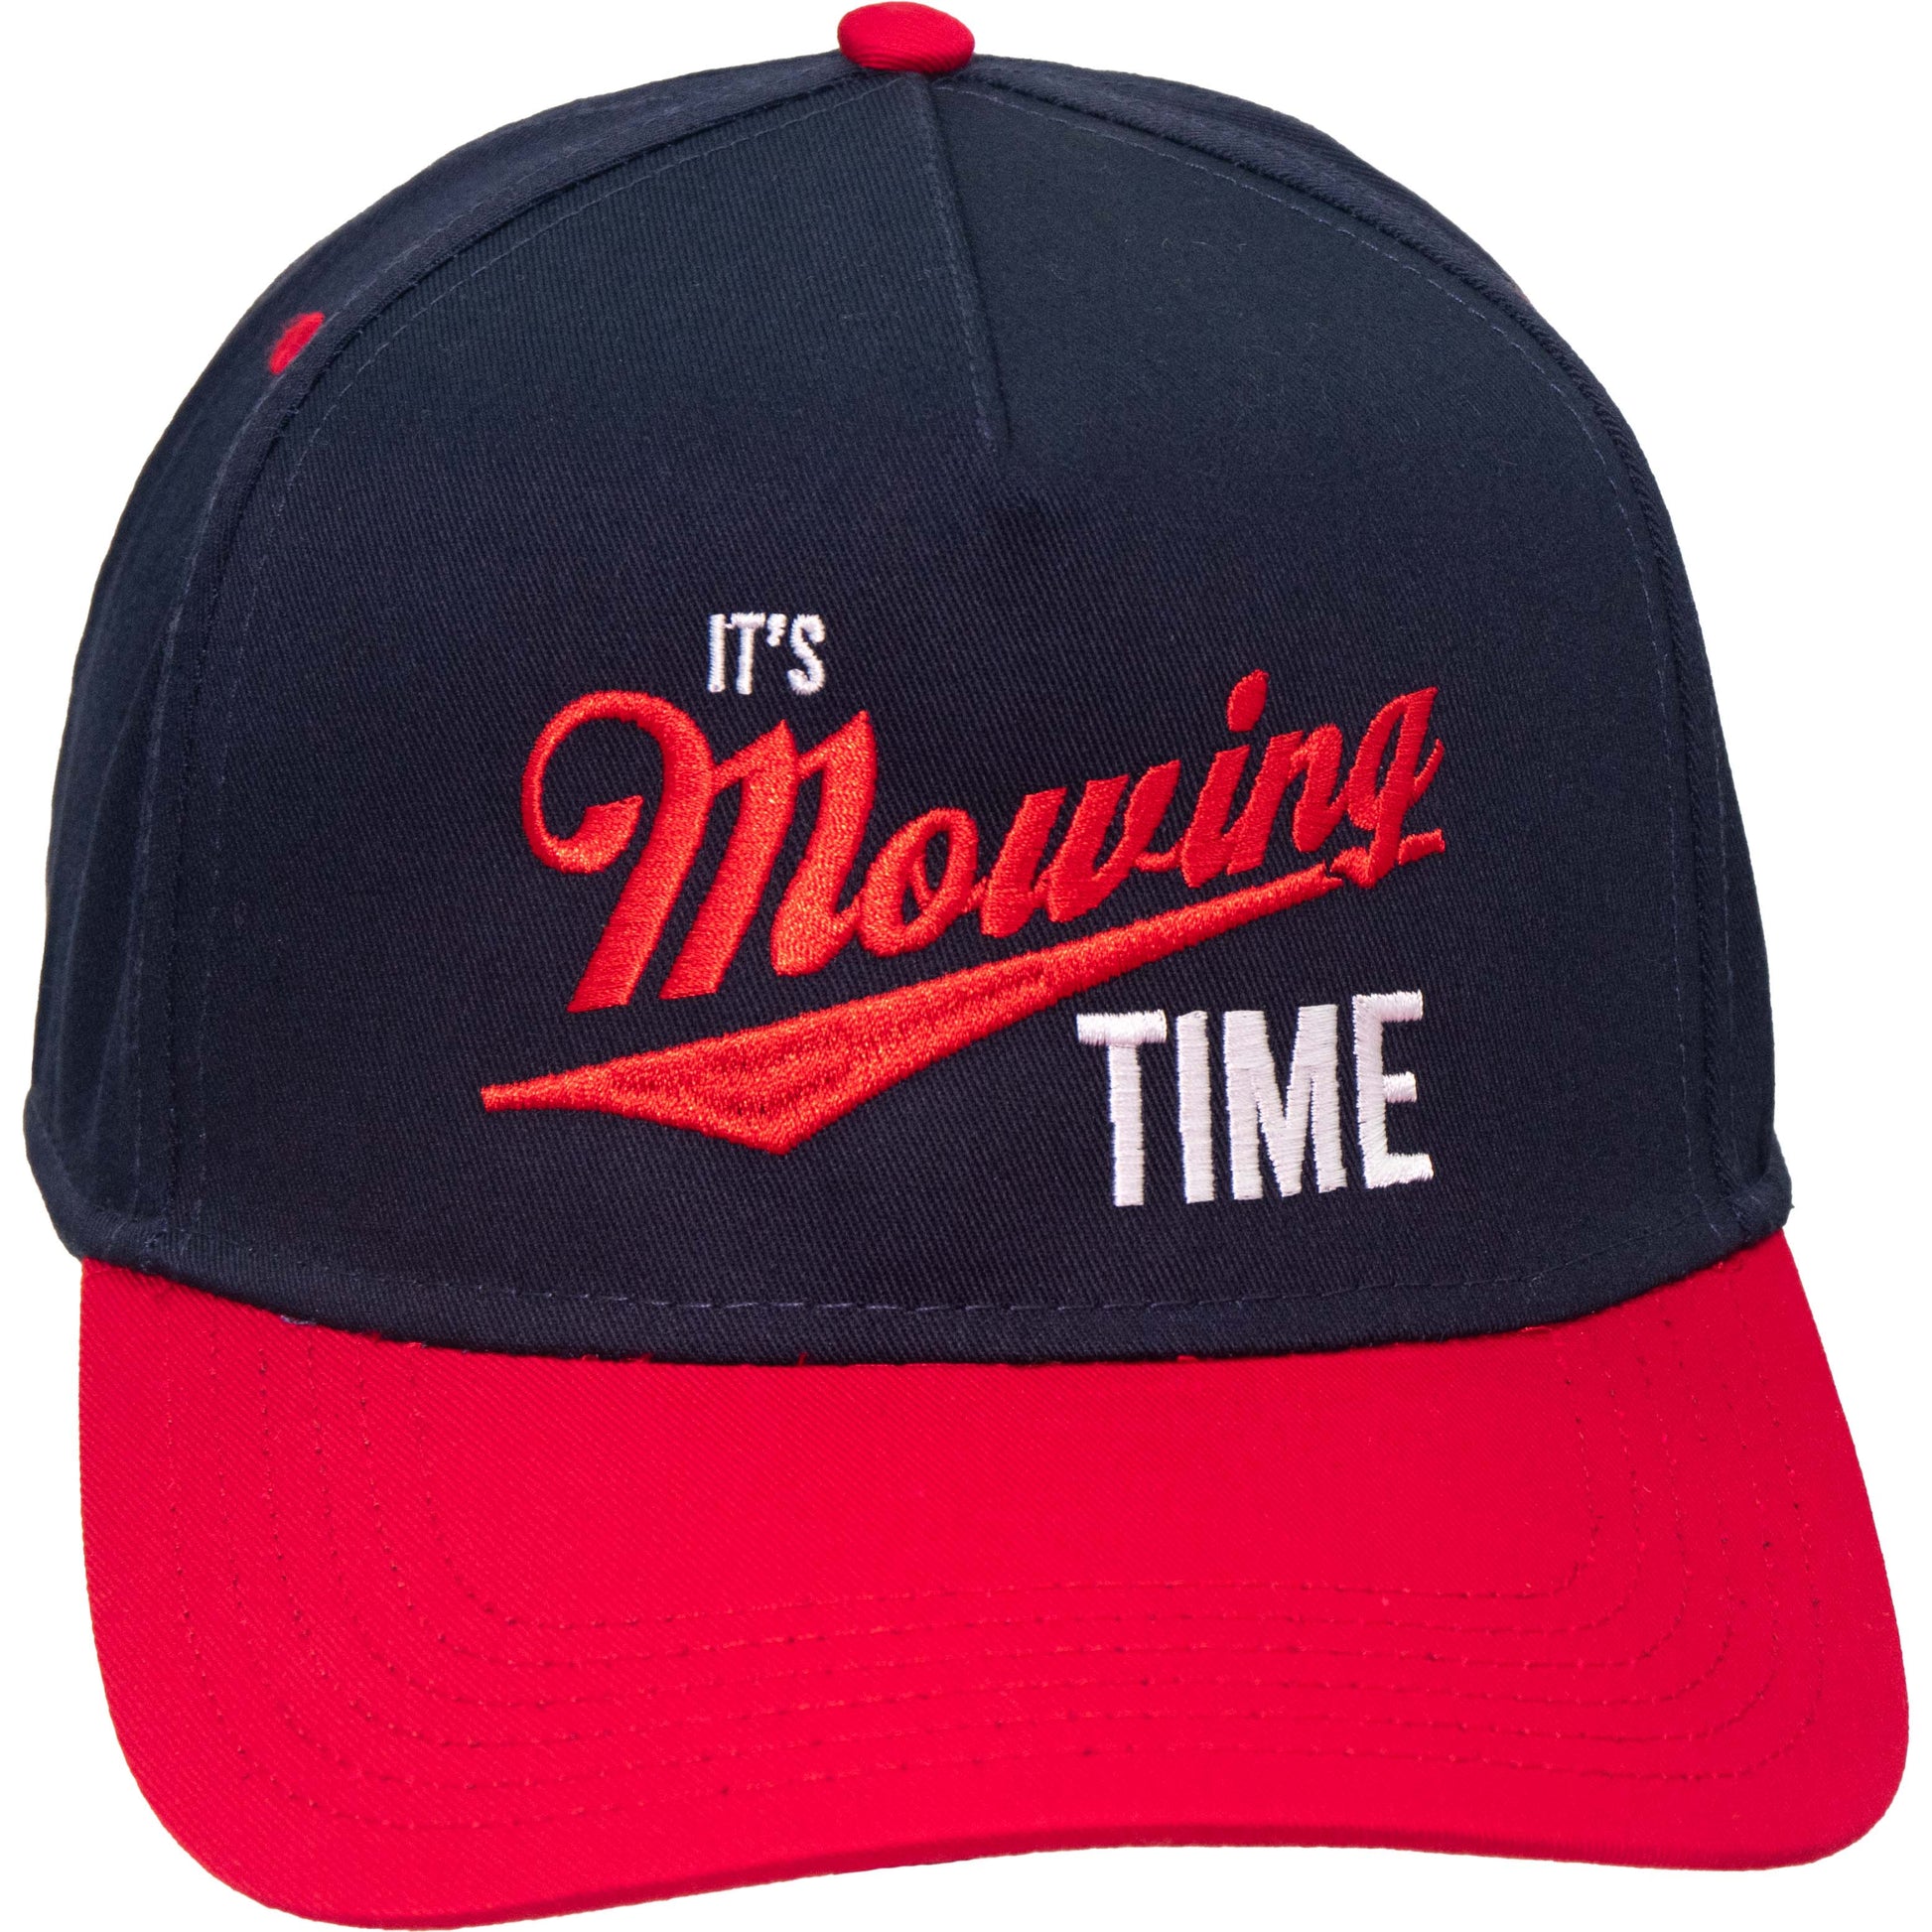 It's Mowing Time Trucker Hat – Middle Class Fancy